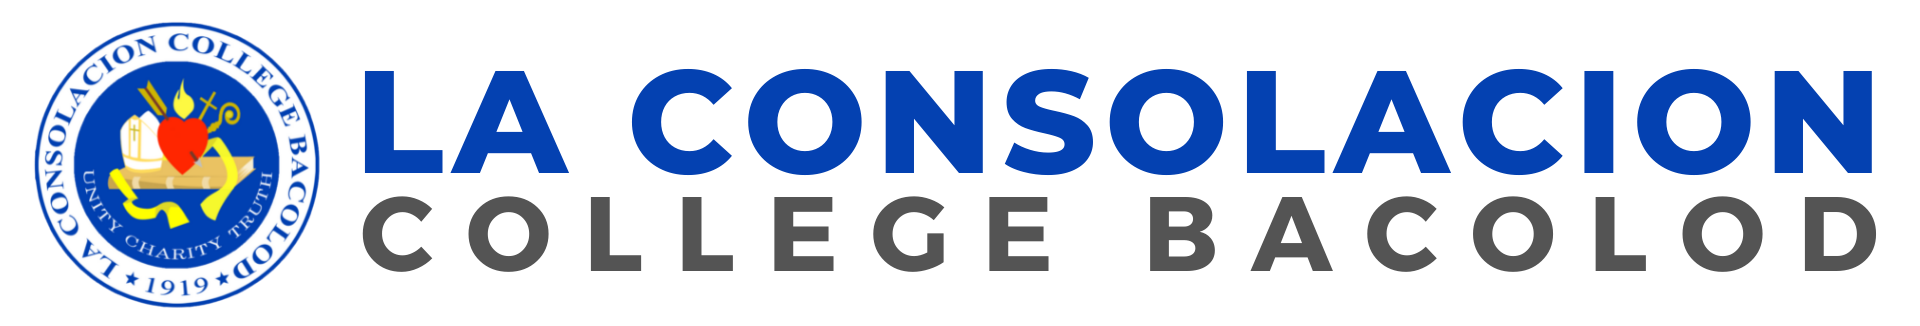 La Consolacion College logo